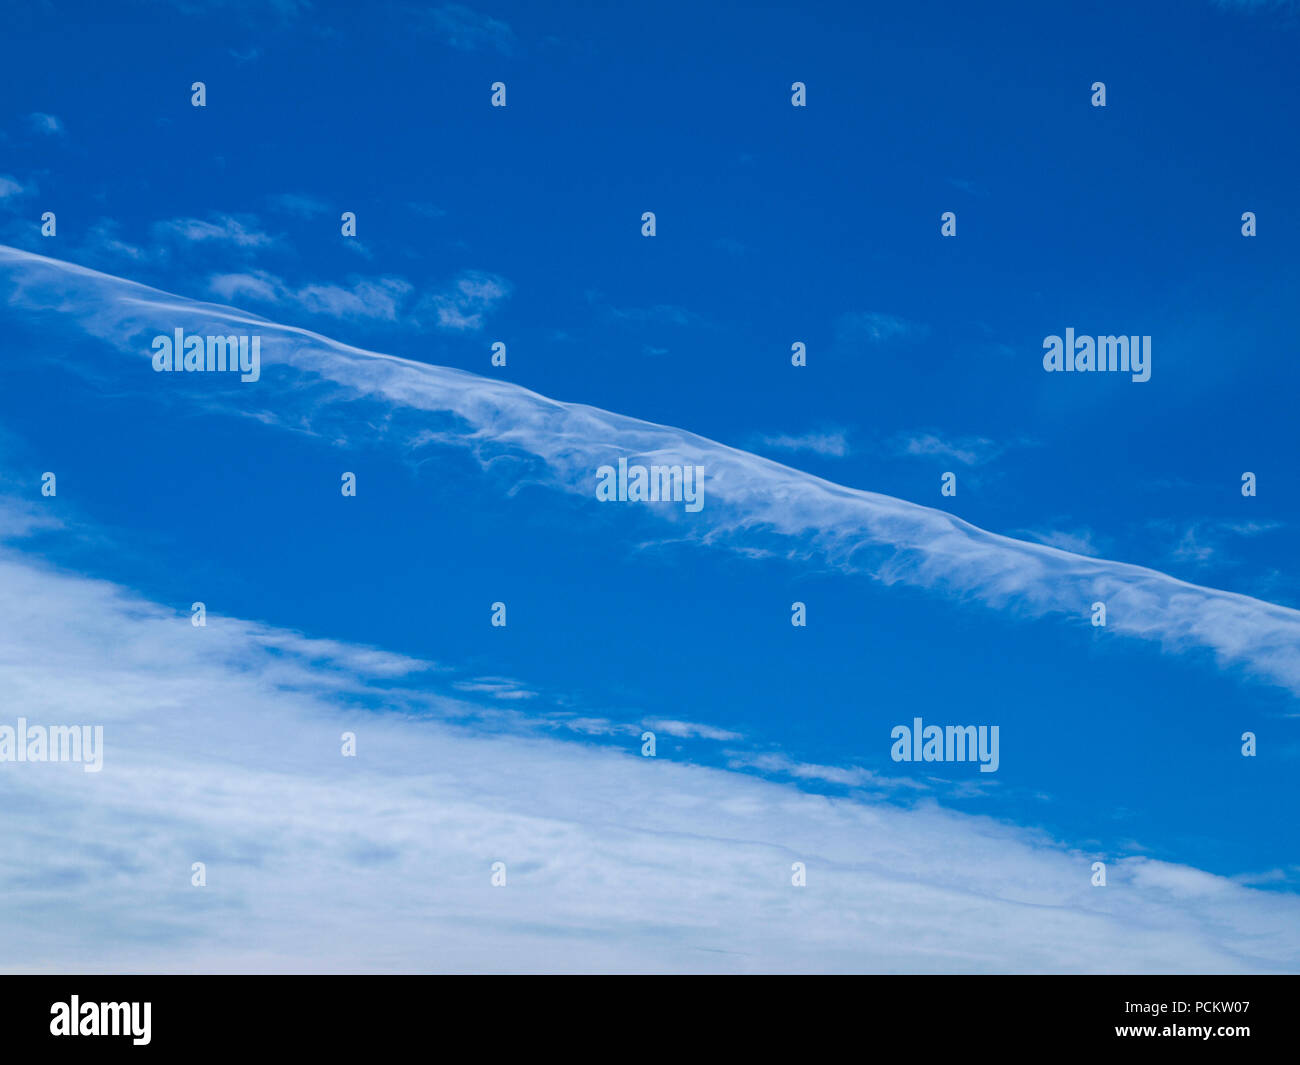 Eine bunte Kondensstreifen und Zirruswolken sky cloudscape mit einem Vapor Trail Wolkenbildung in der Mitte der blauen Himmel. New South Wales, Australien. Stockfoto